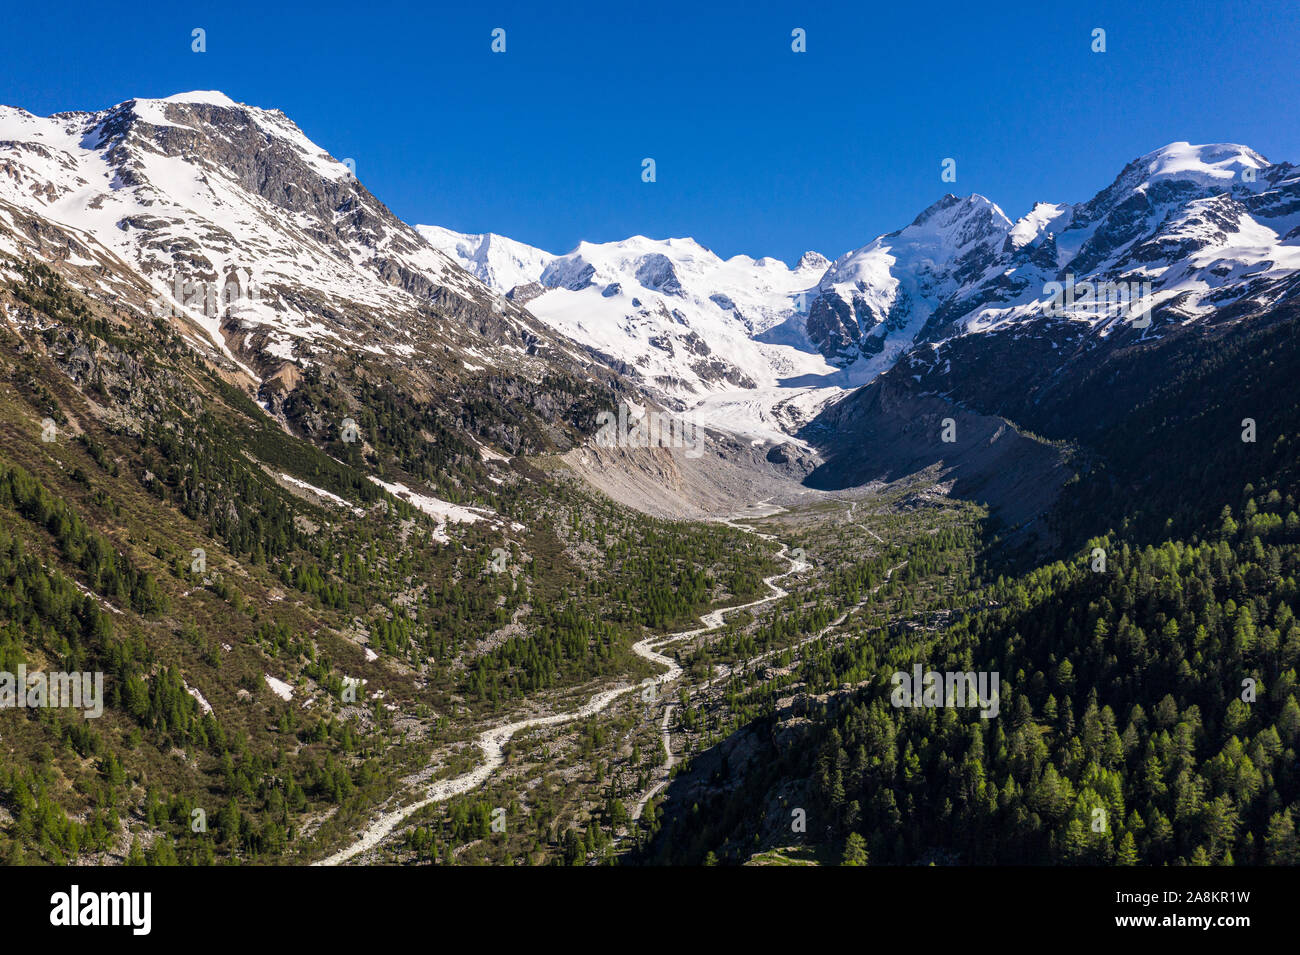 Vue aérienne imprenable massif de la Bernina et le glacier, qui est en train de fondre rapidement, dans les Alpes en Grisons en Suisse Banque D'Images